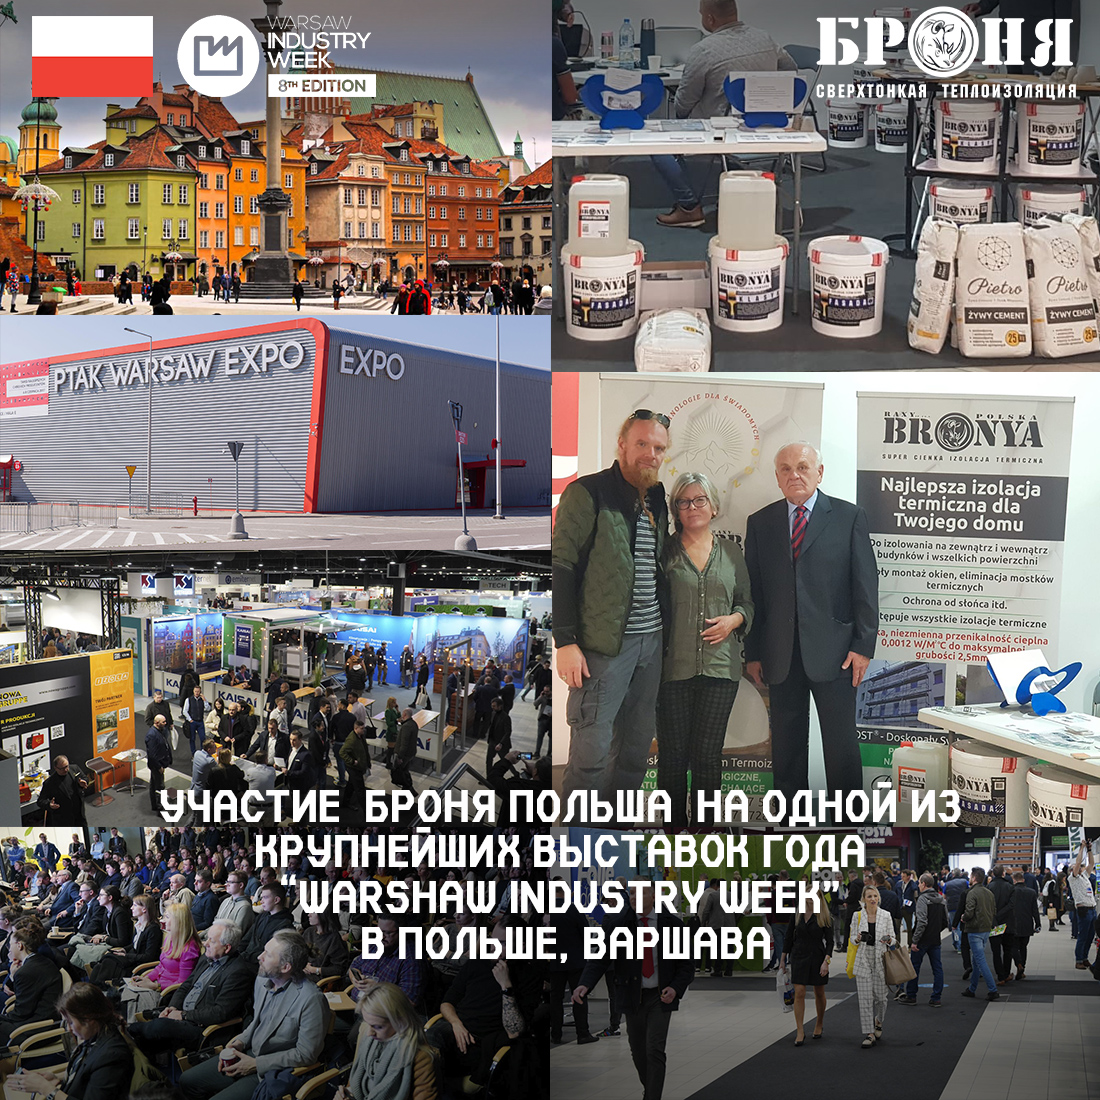 Участие  Броня Польша  на одной из крупнейших выставок года “Warsaw industry week” в Польше, Варшава(фото) 